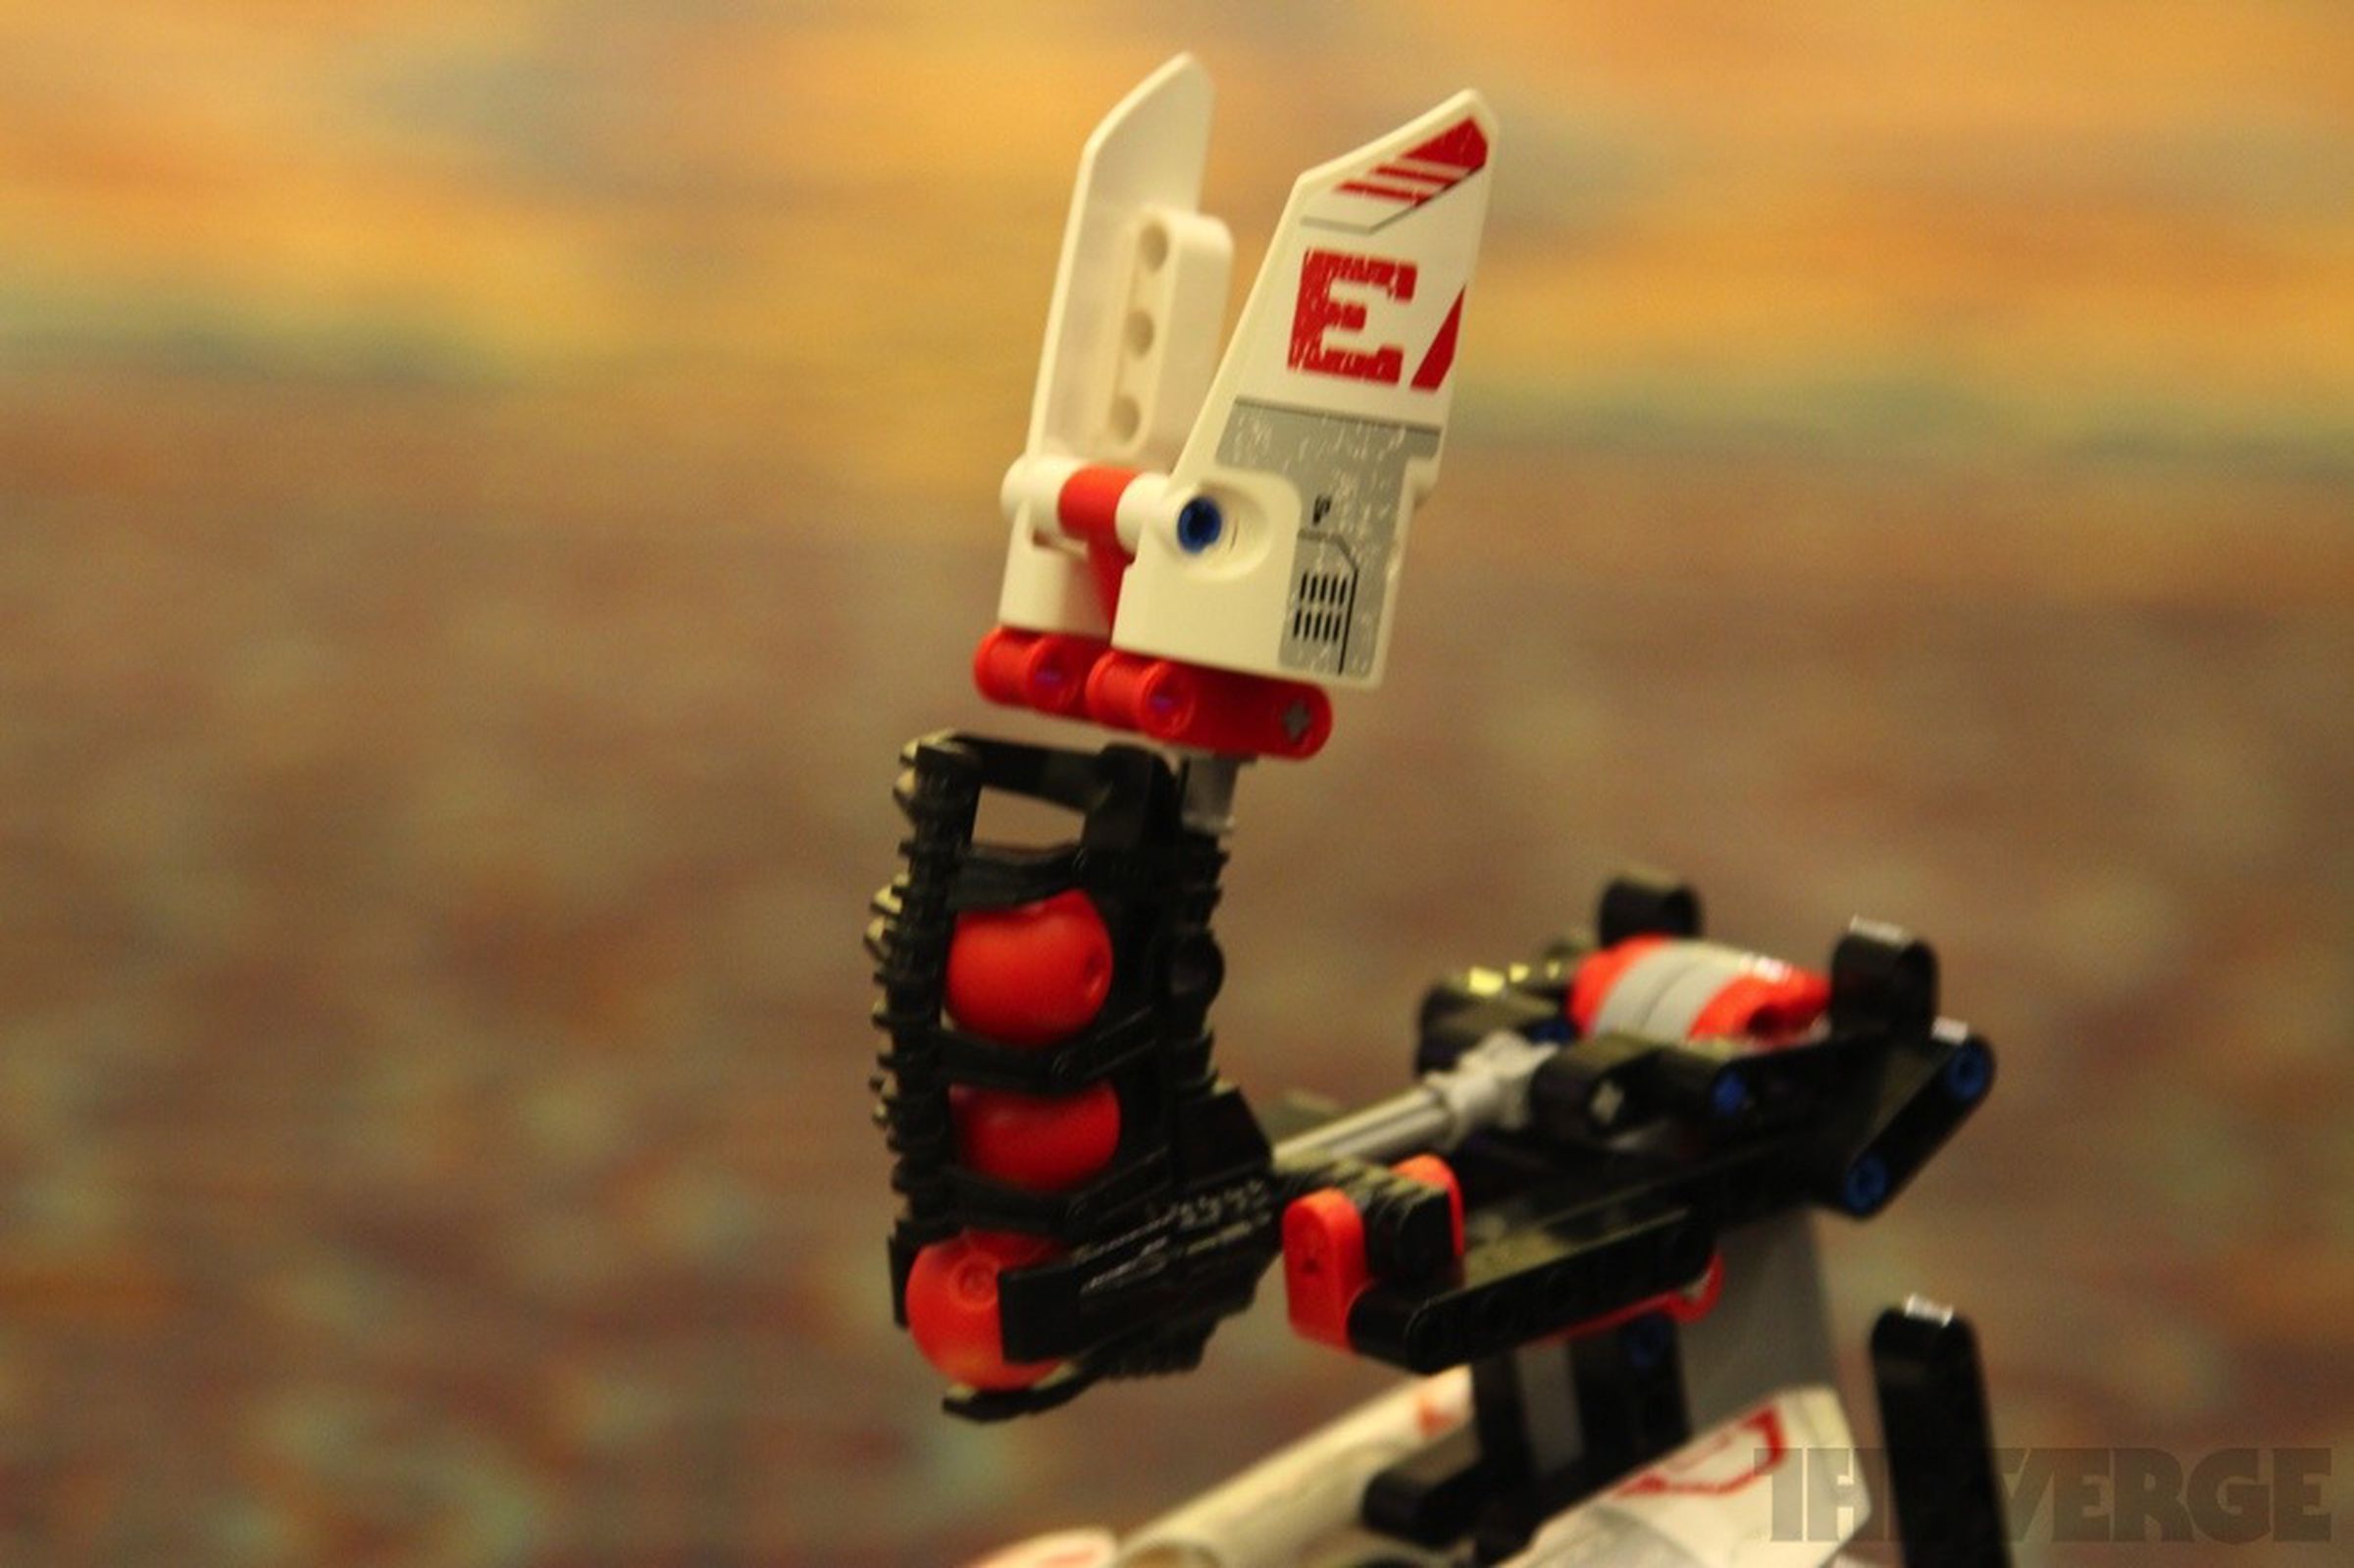 Lego Mindstorms EV3 pictures